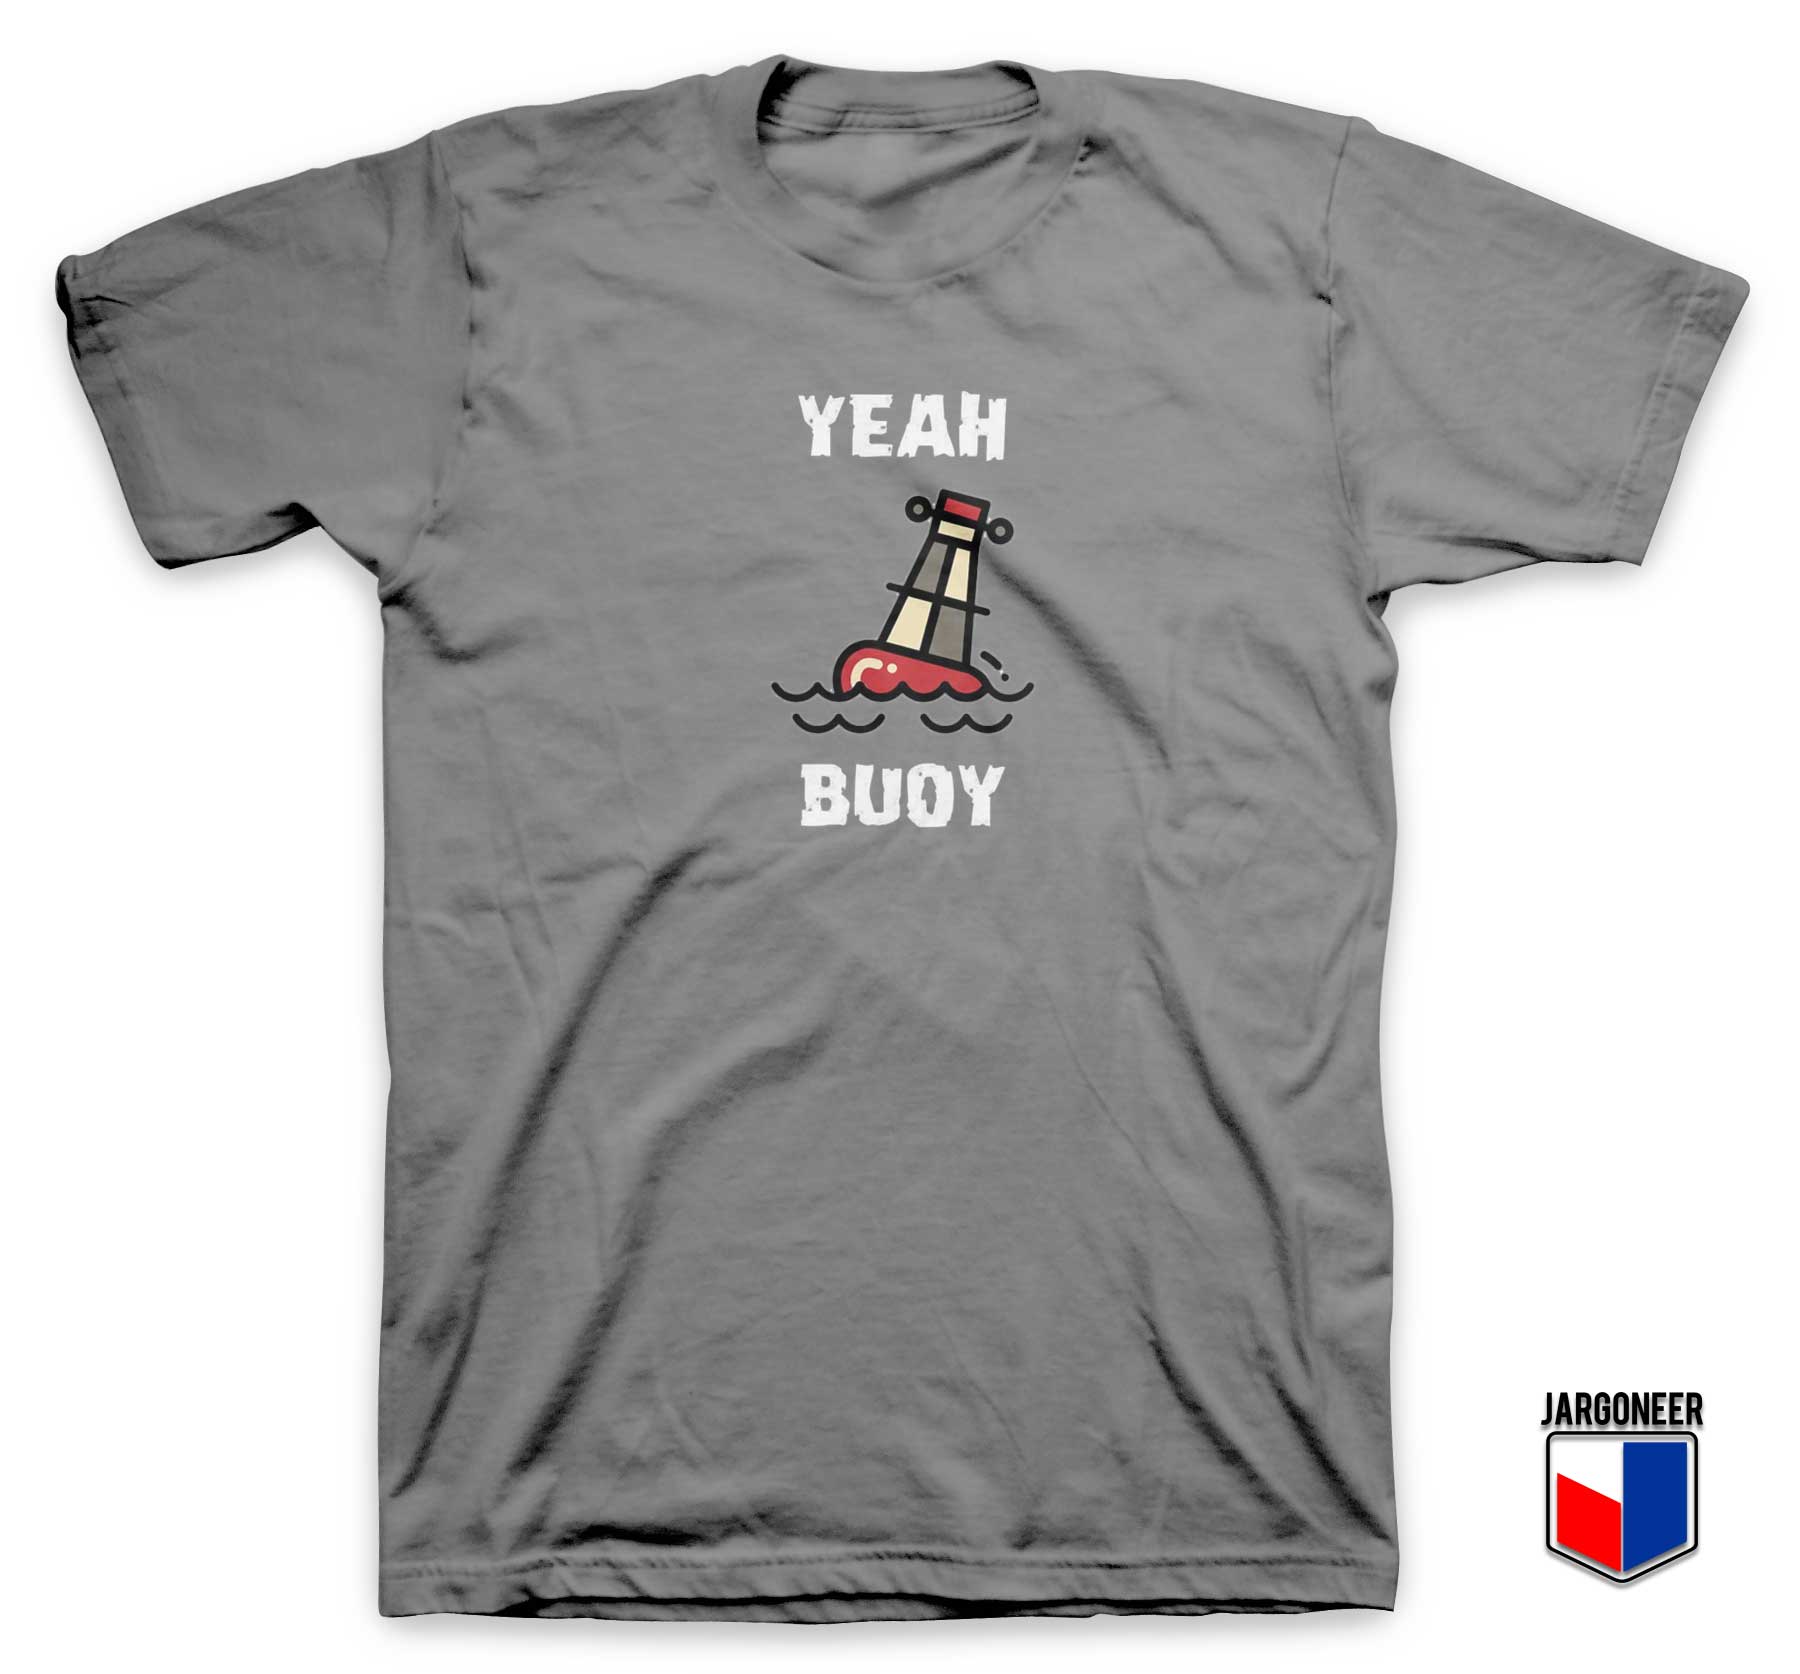 Yeah Buoy - Shop Unique Graphic Cool Shirt Designs